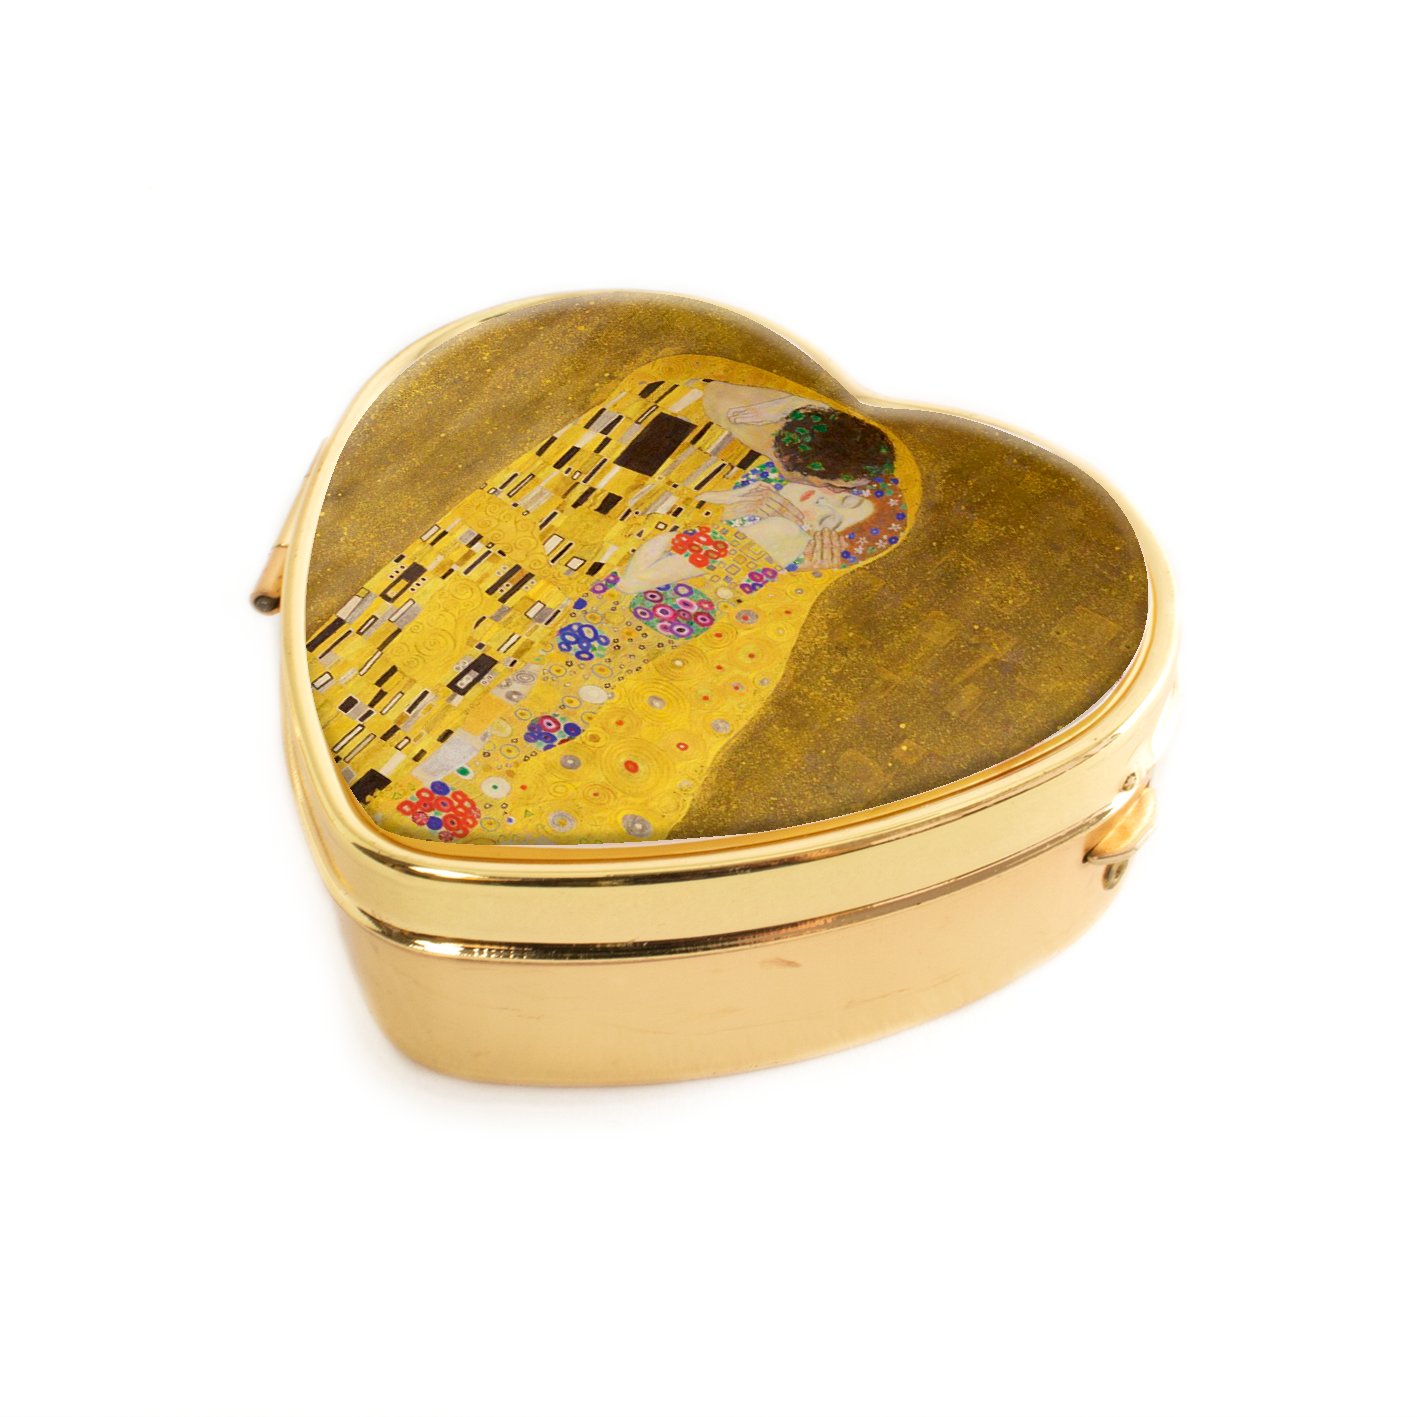 Voorzichtig Ontembare toelage Pillendoosje, hartvormig, Klimt| Museum Webshop - Museum-Webshop